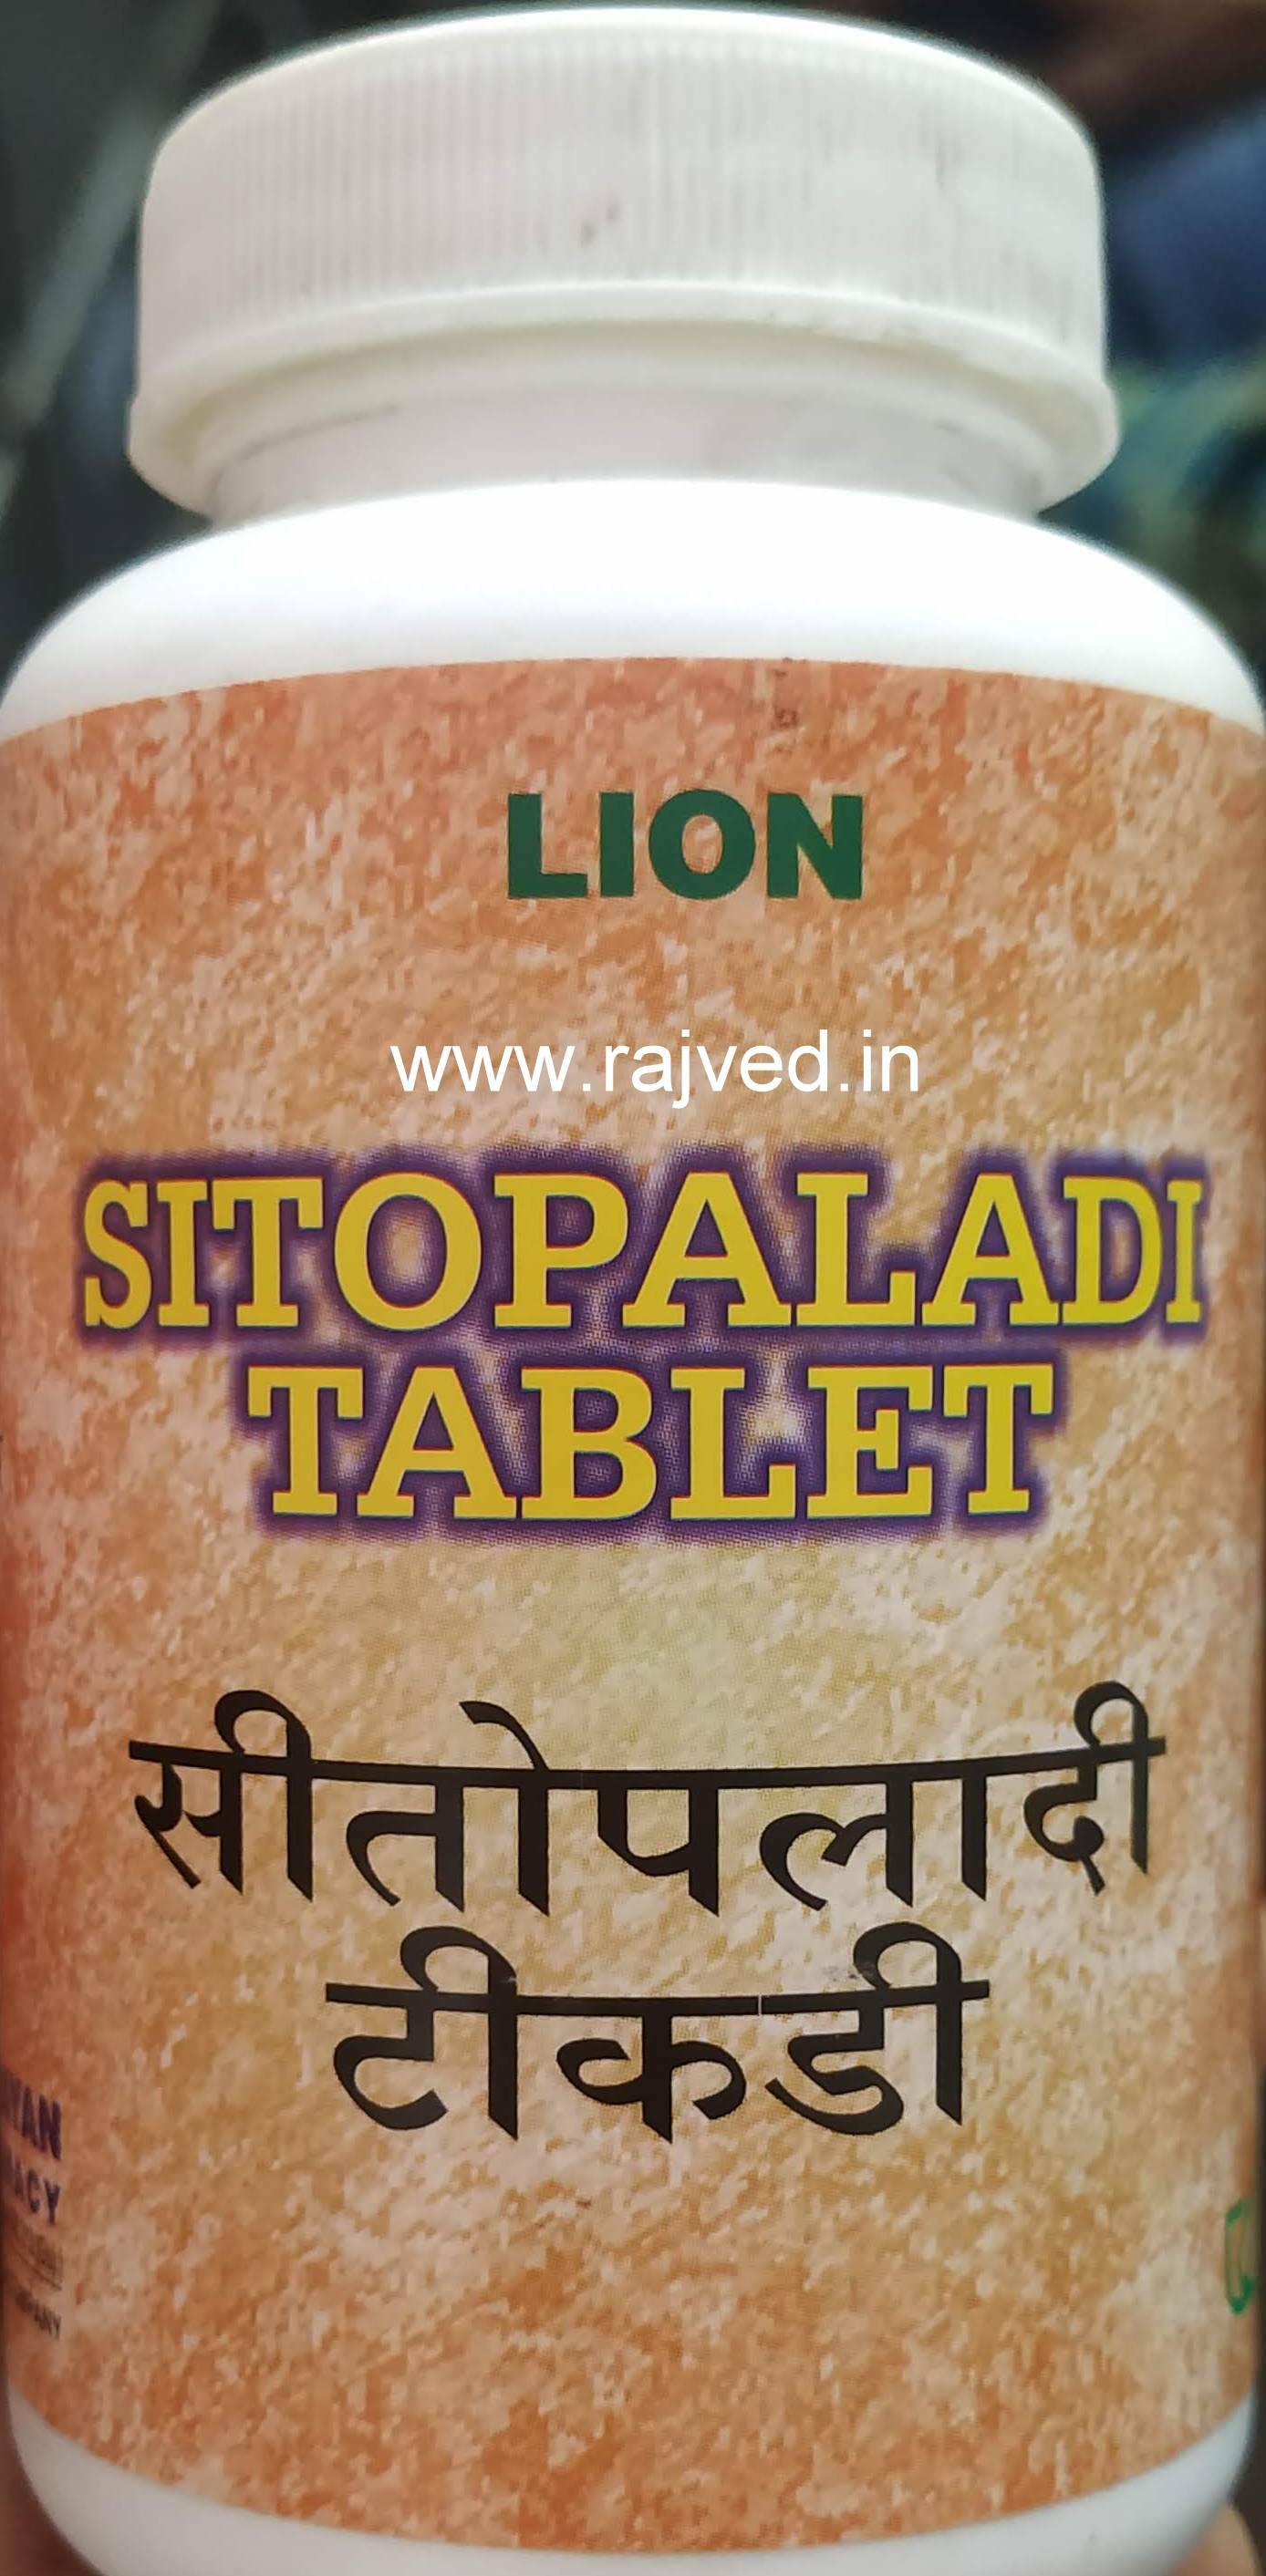 sitopaladi tablets 100tab lion